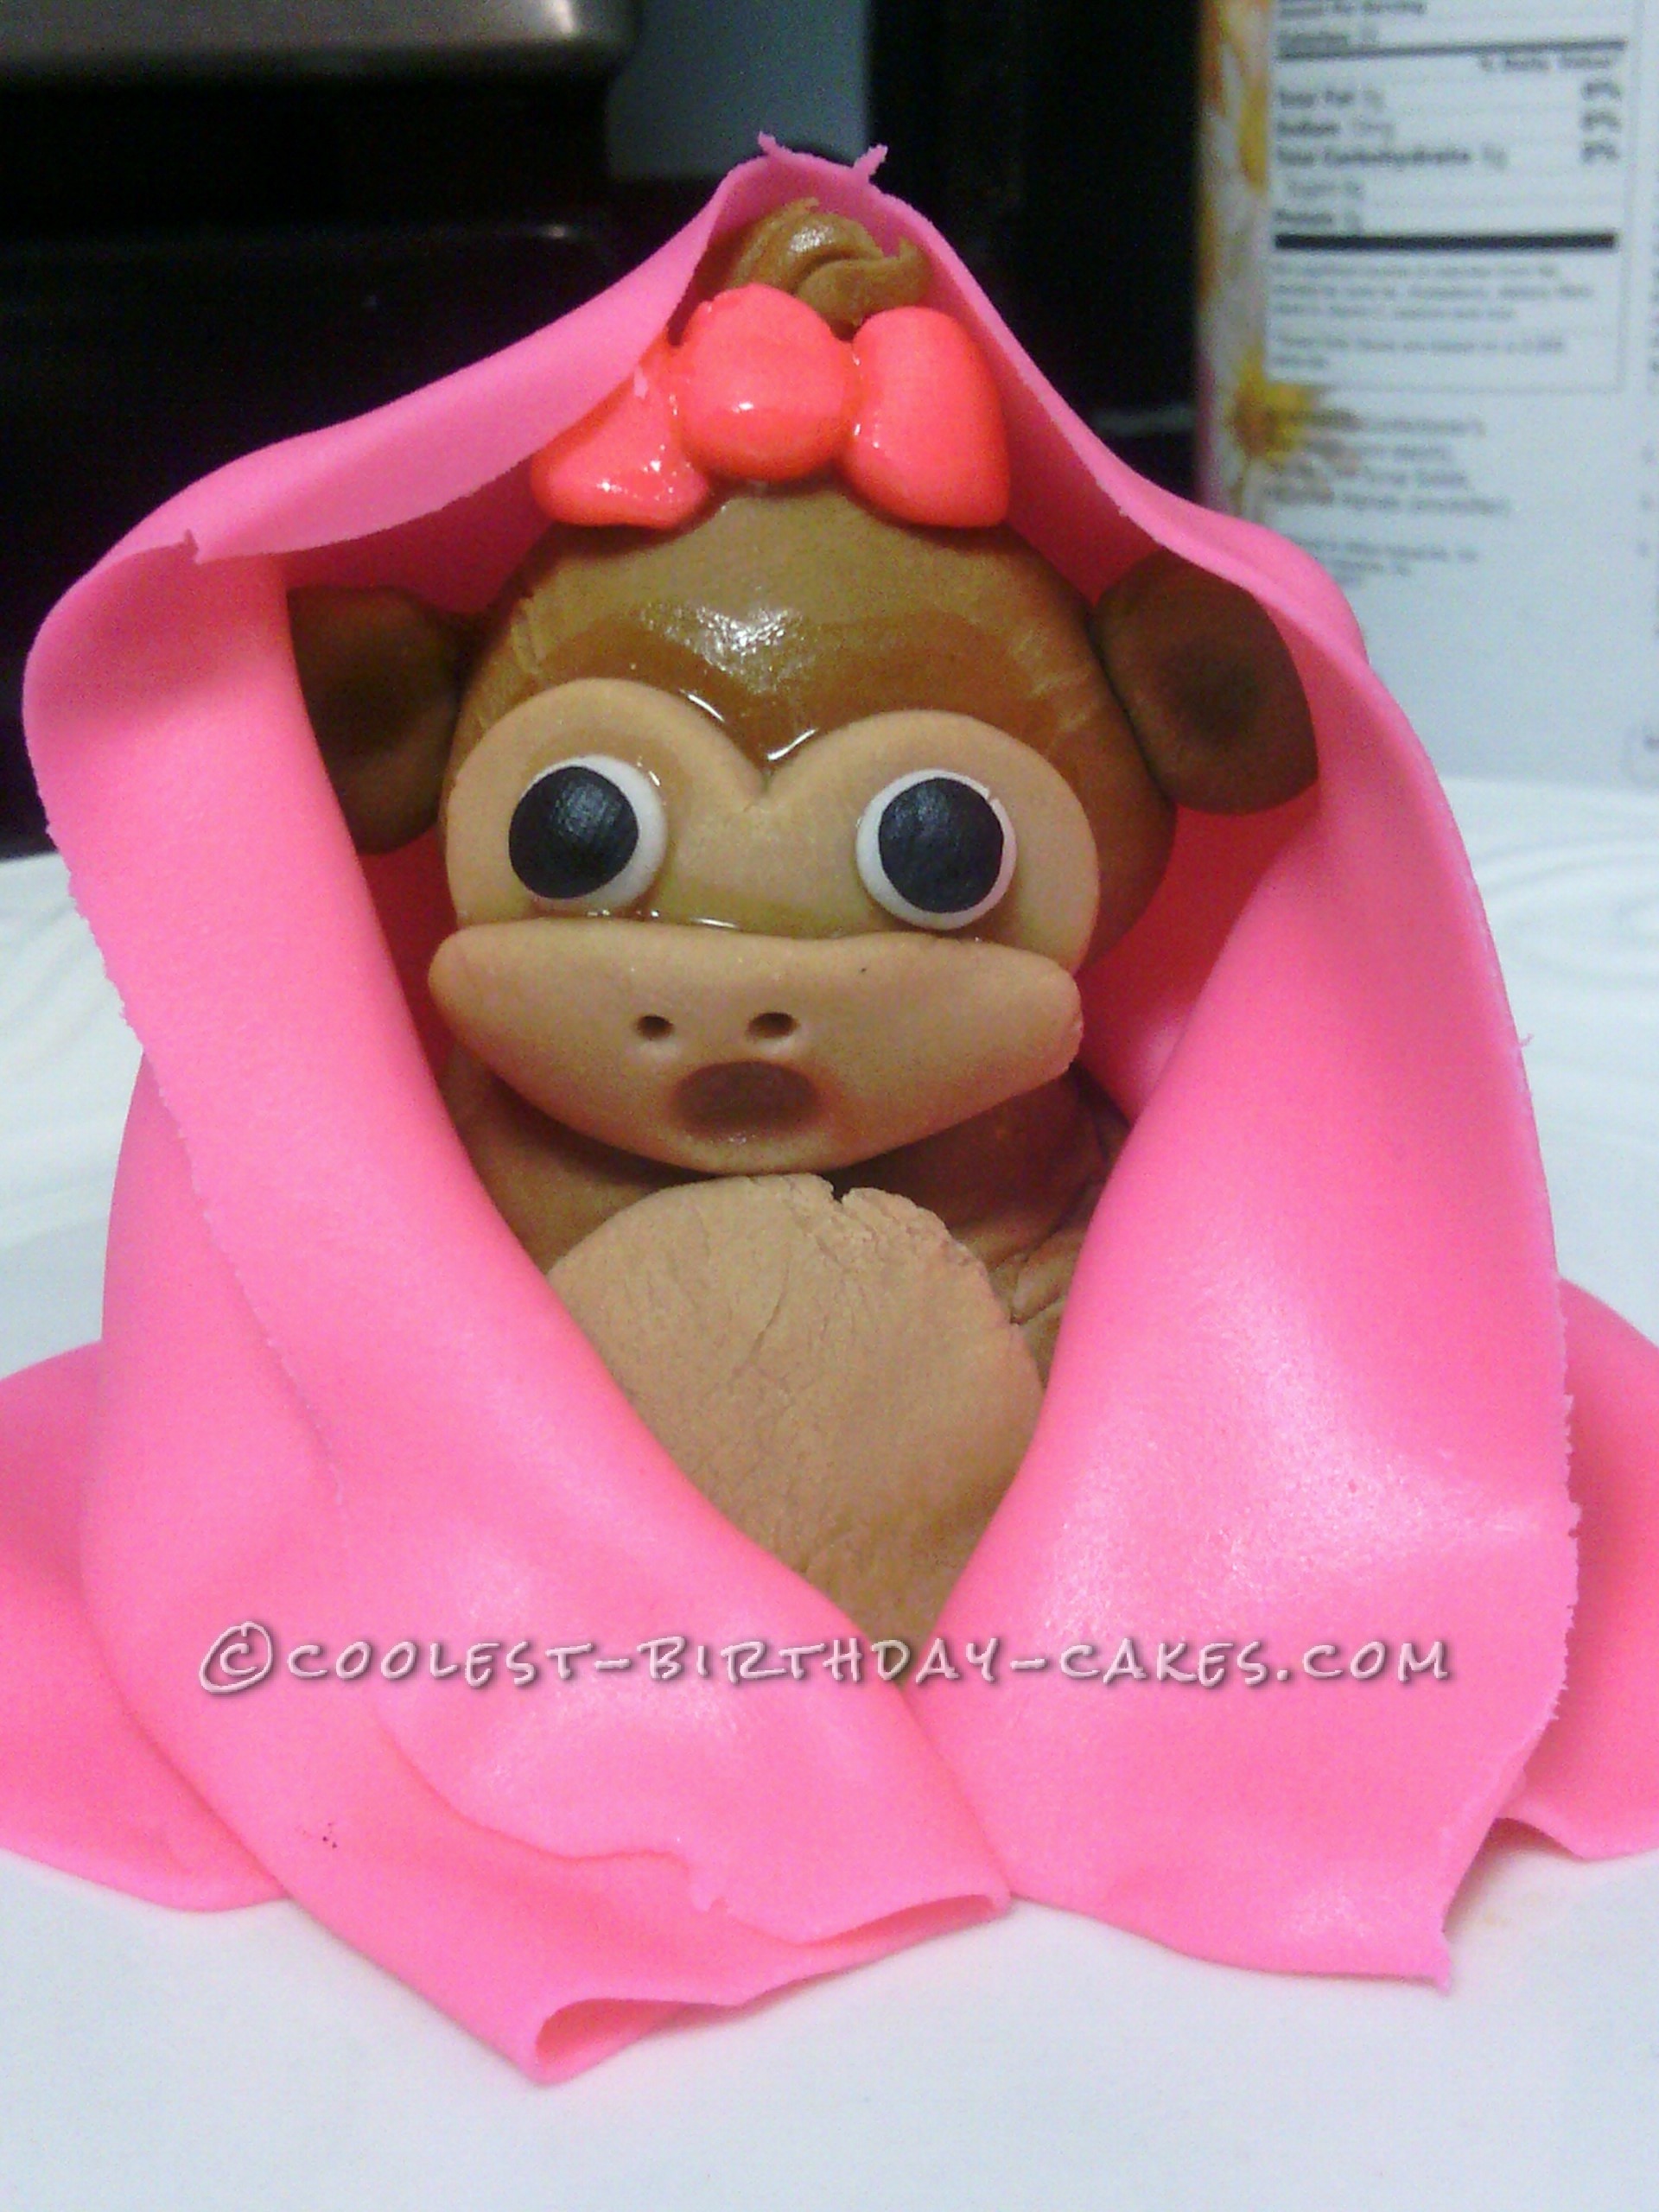 Baby Girl Monkey Cake